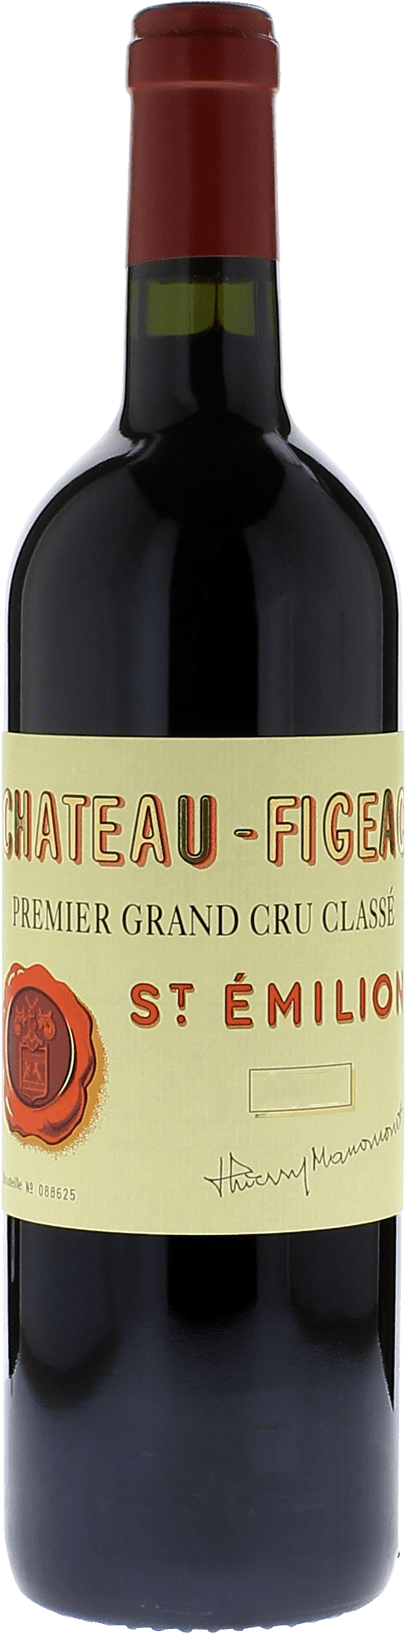 Figeac st emilion 2011 1er Grand cru B class Saint-Emilion, Bordeaux rouge